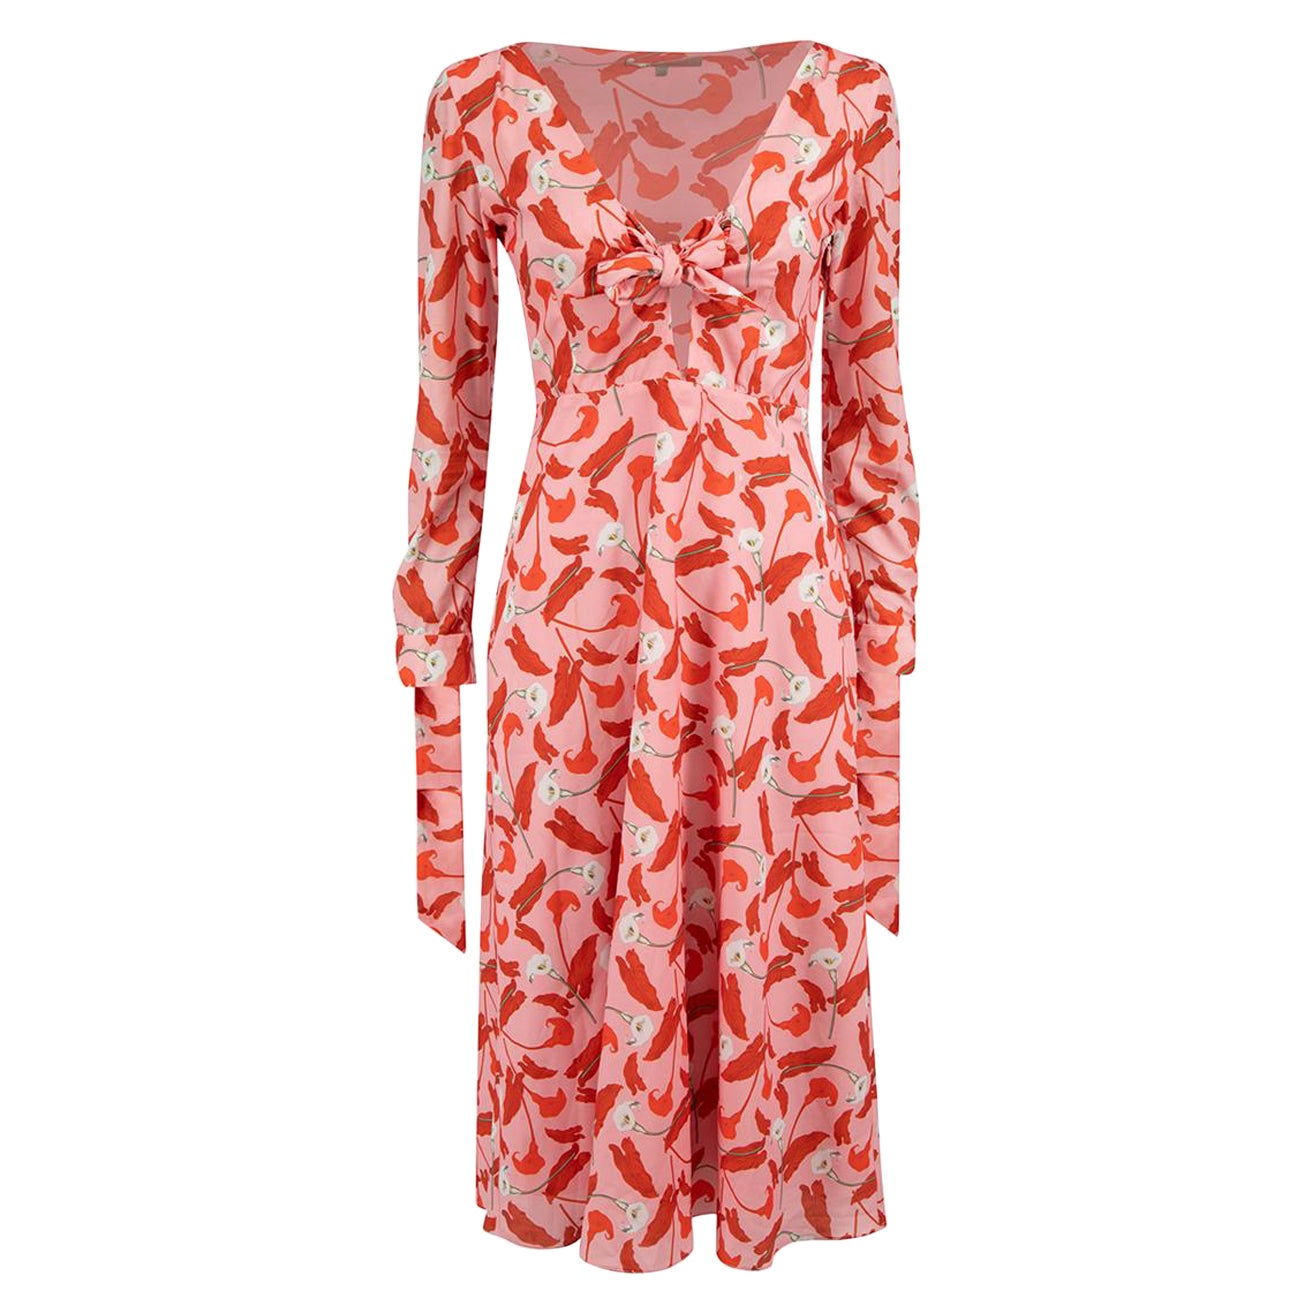 Borgo De Nor Pink Floral Print Tie Front Dress Size M For Sale